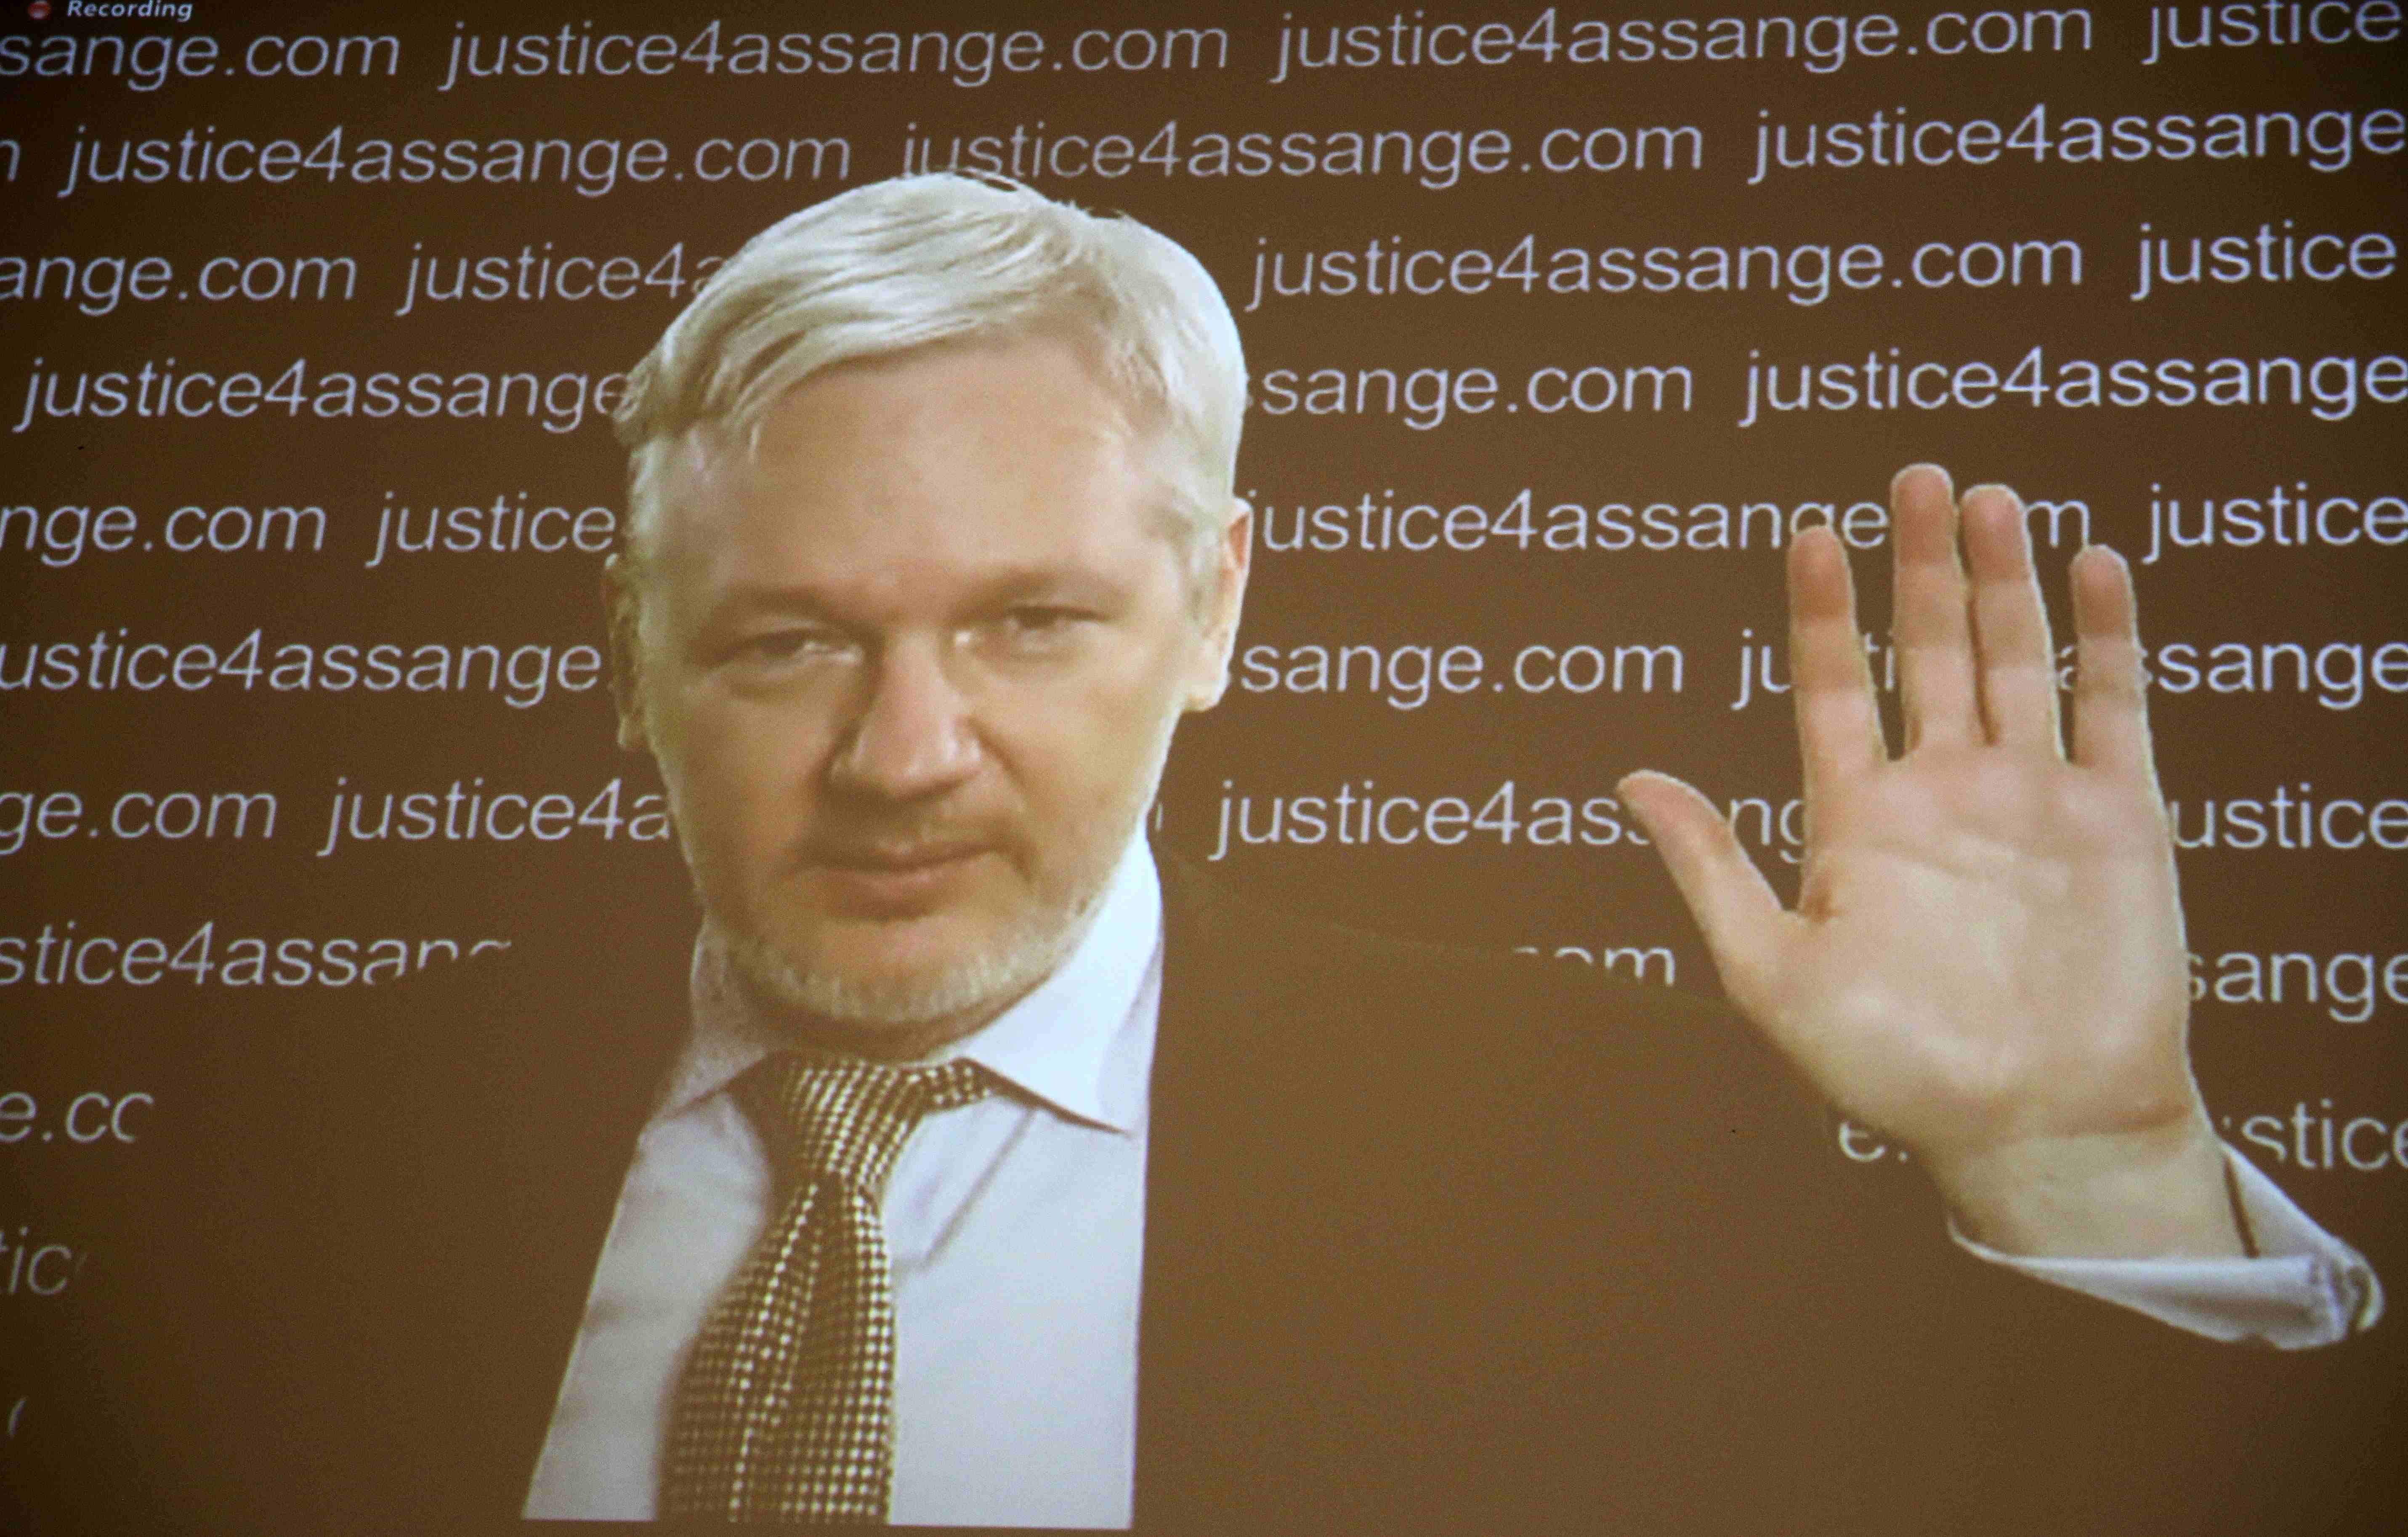 Los abogados consideran que el caso de Assange podría convertirse en uno de los casos legales más importantes de la historia.